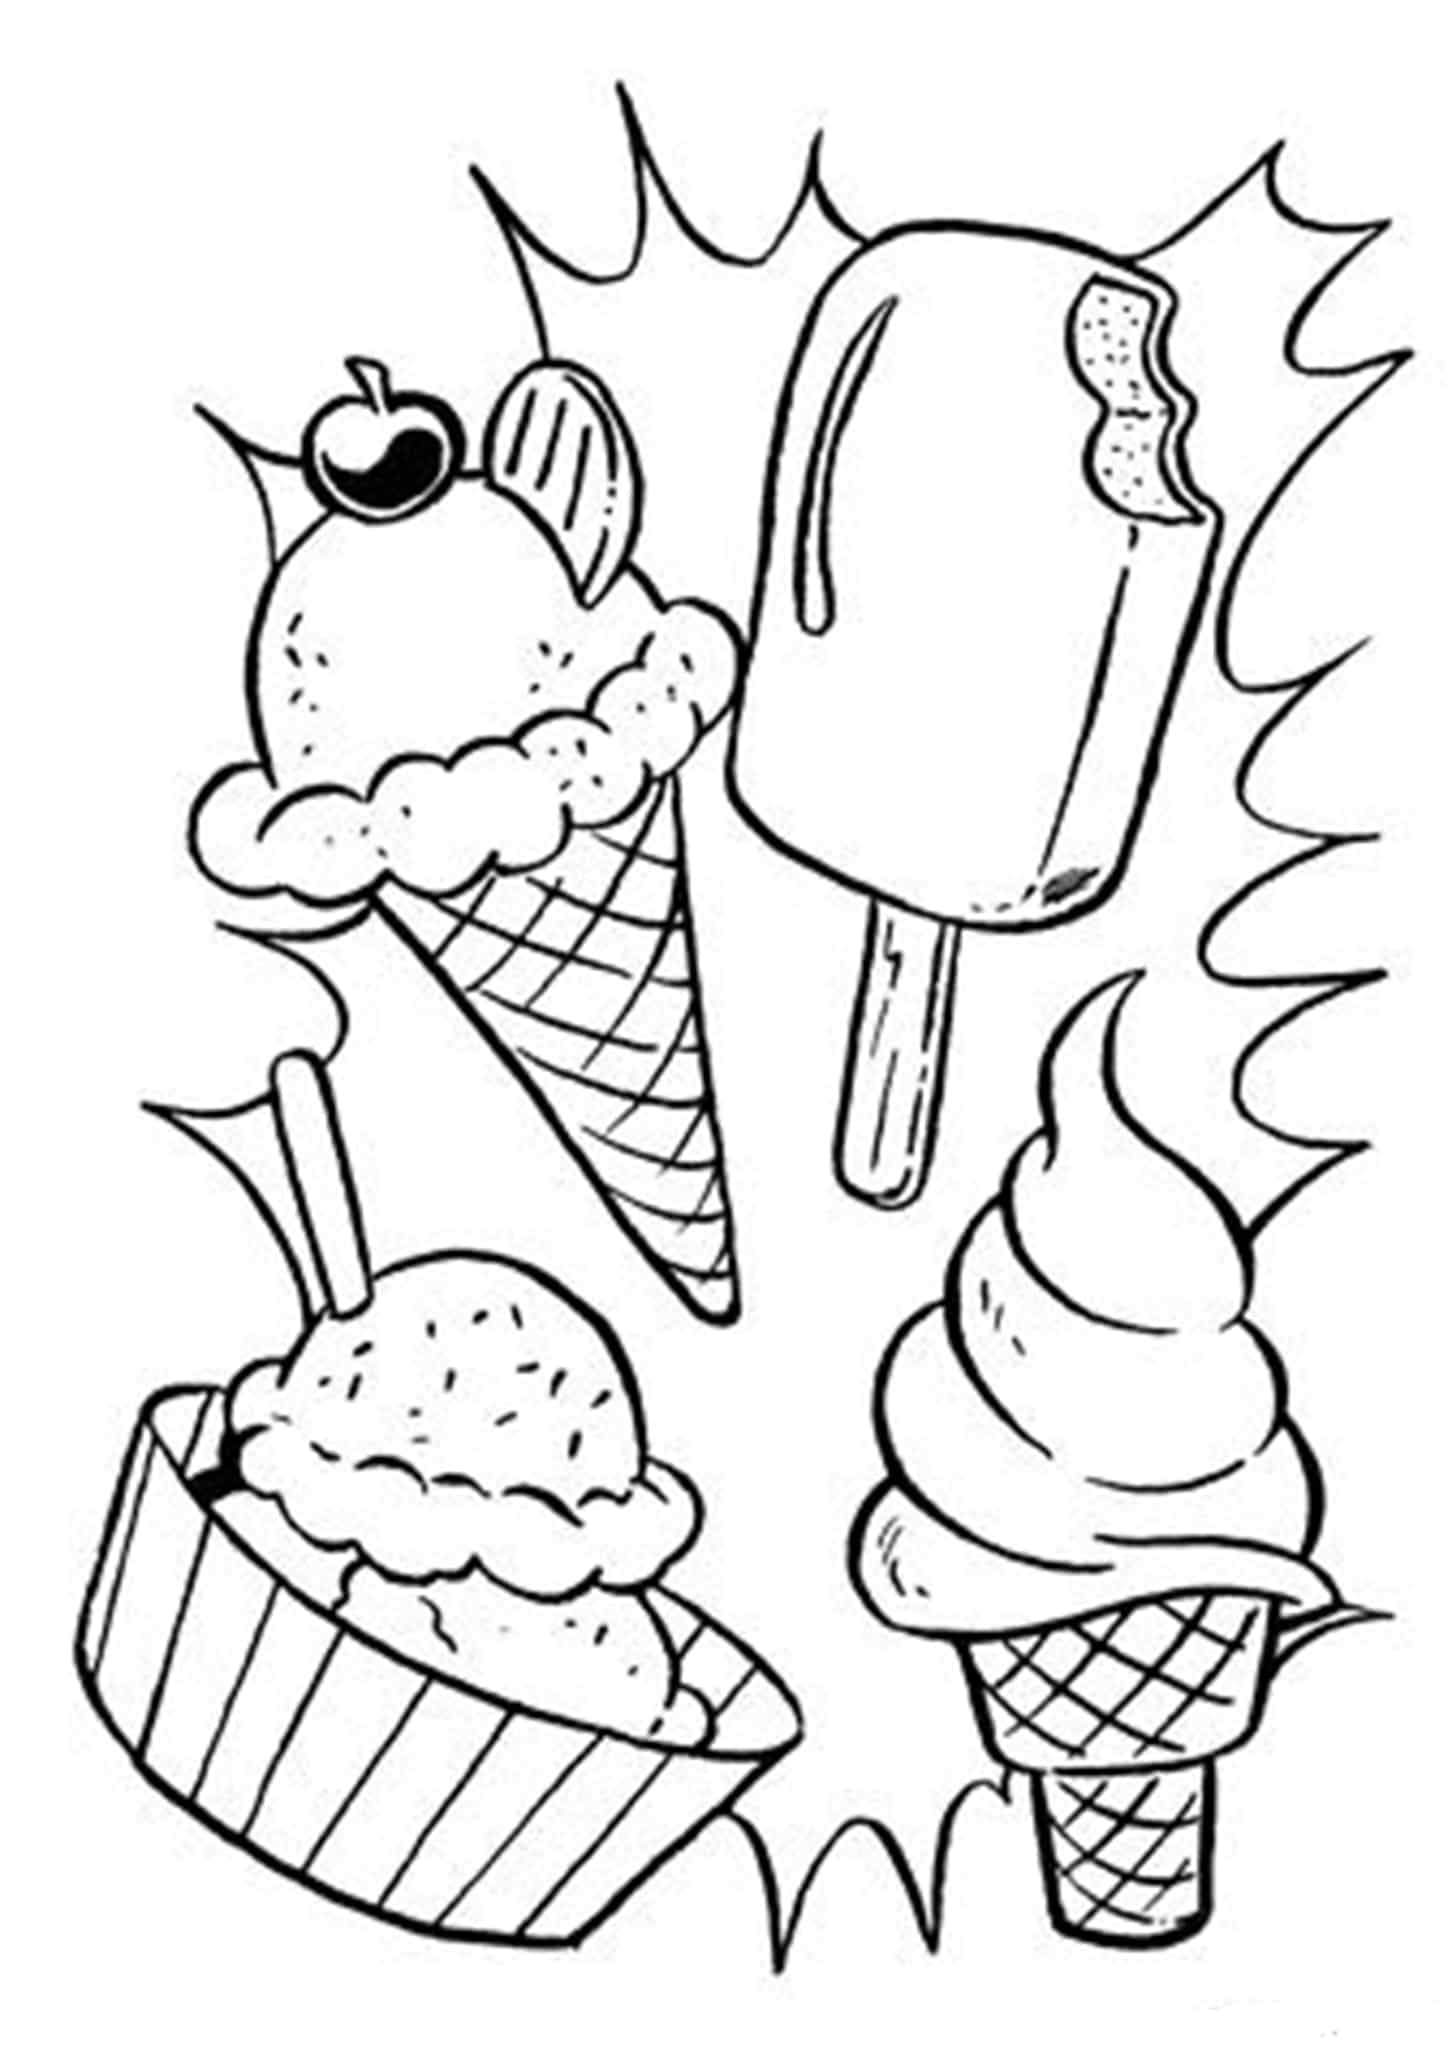 Раскраска мороженщик. Раскраска мороженое. Мороженое раскраска для детей. Раскраска мороженгог. Раскраски лето мороженое.